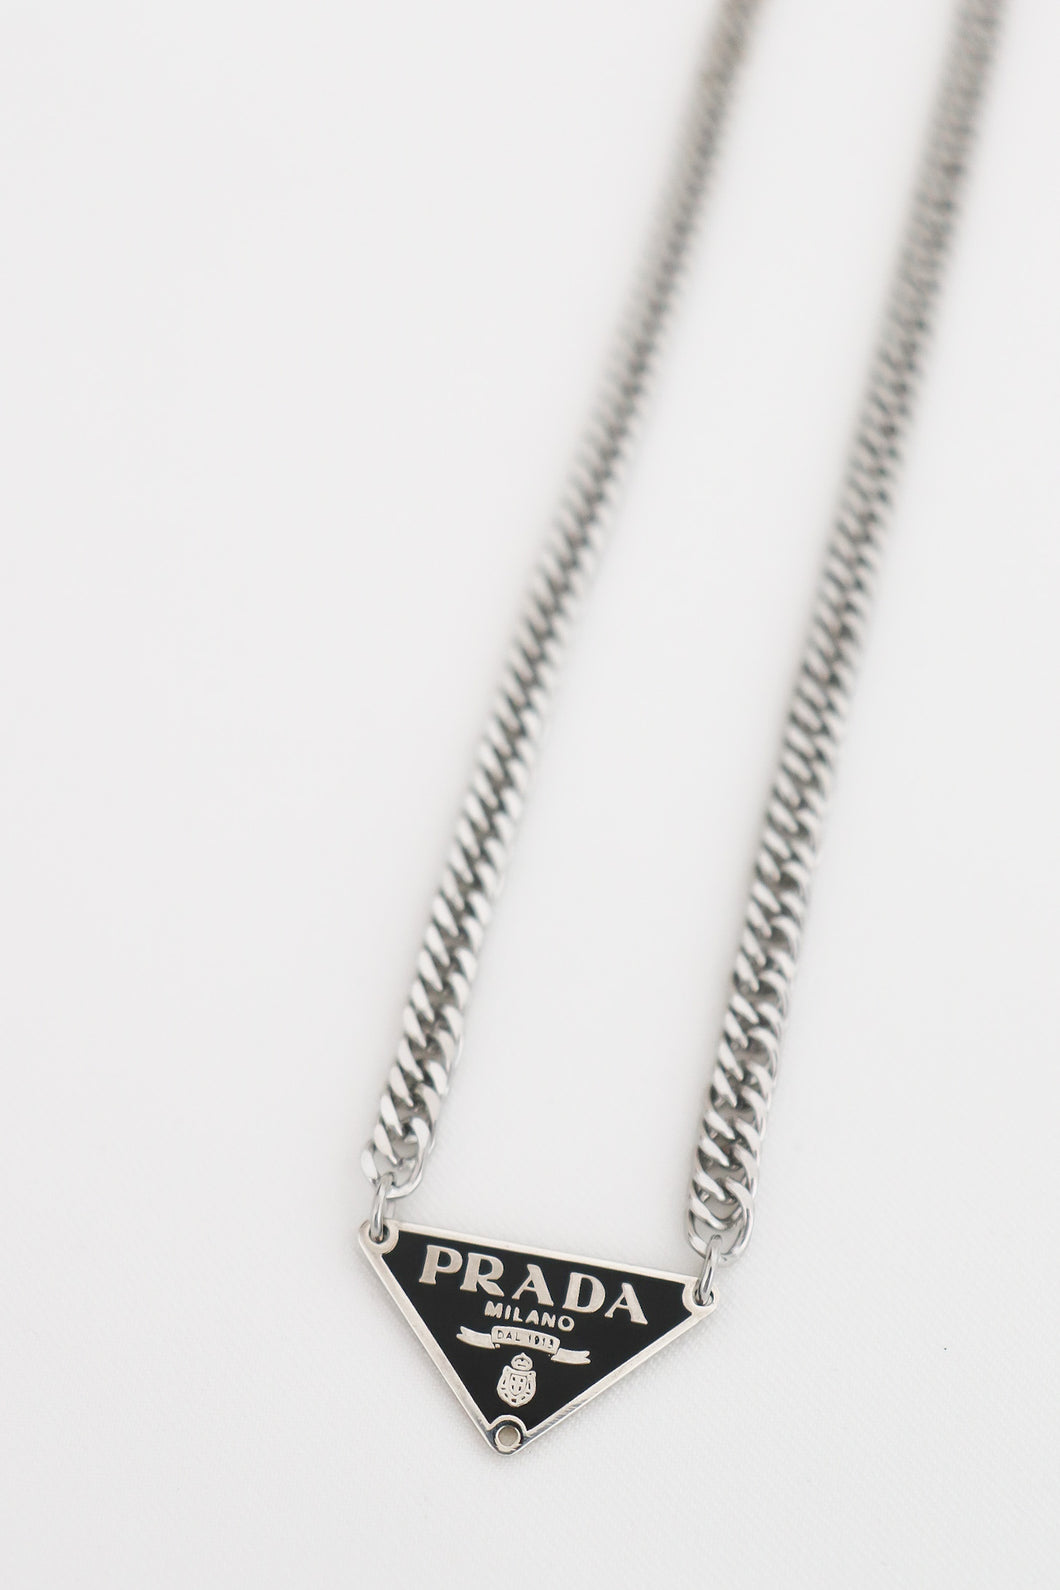 Prada black necklace- silver chain